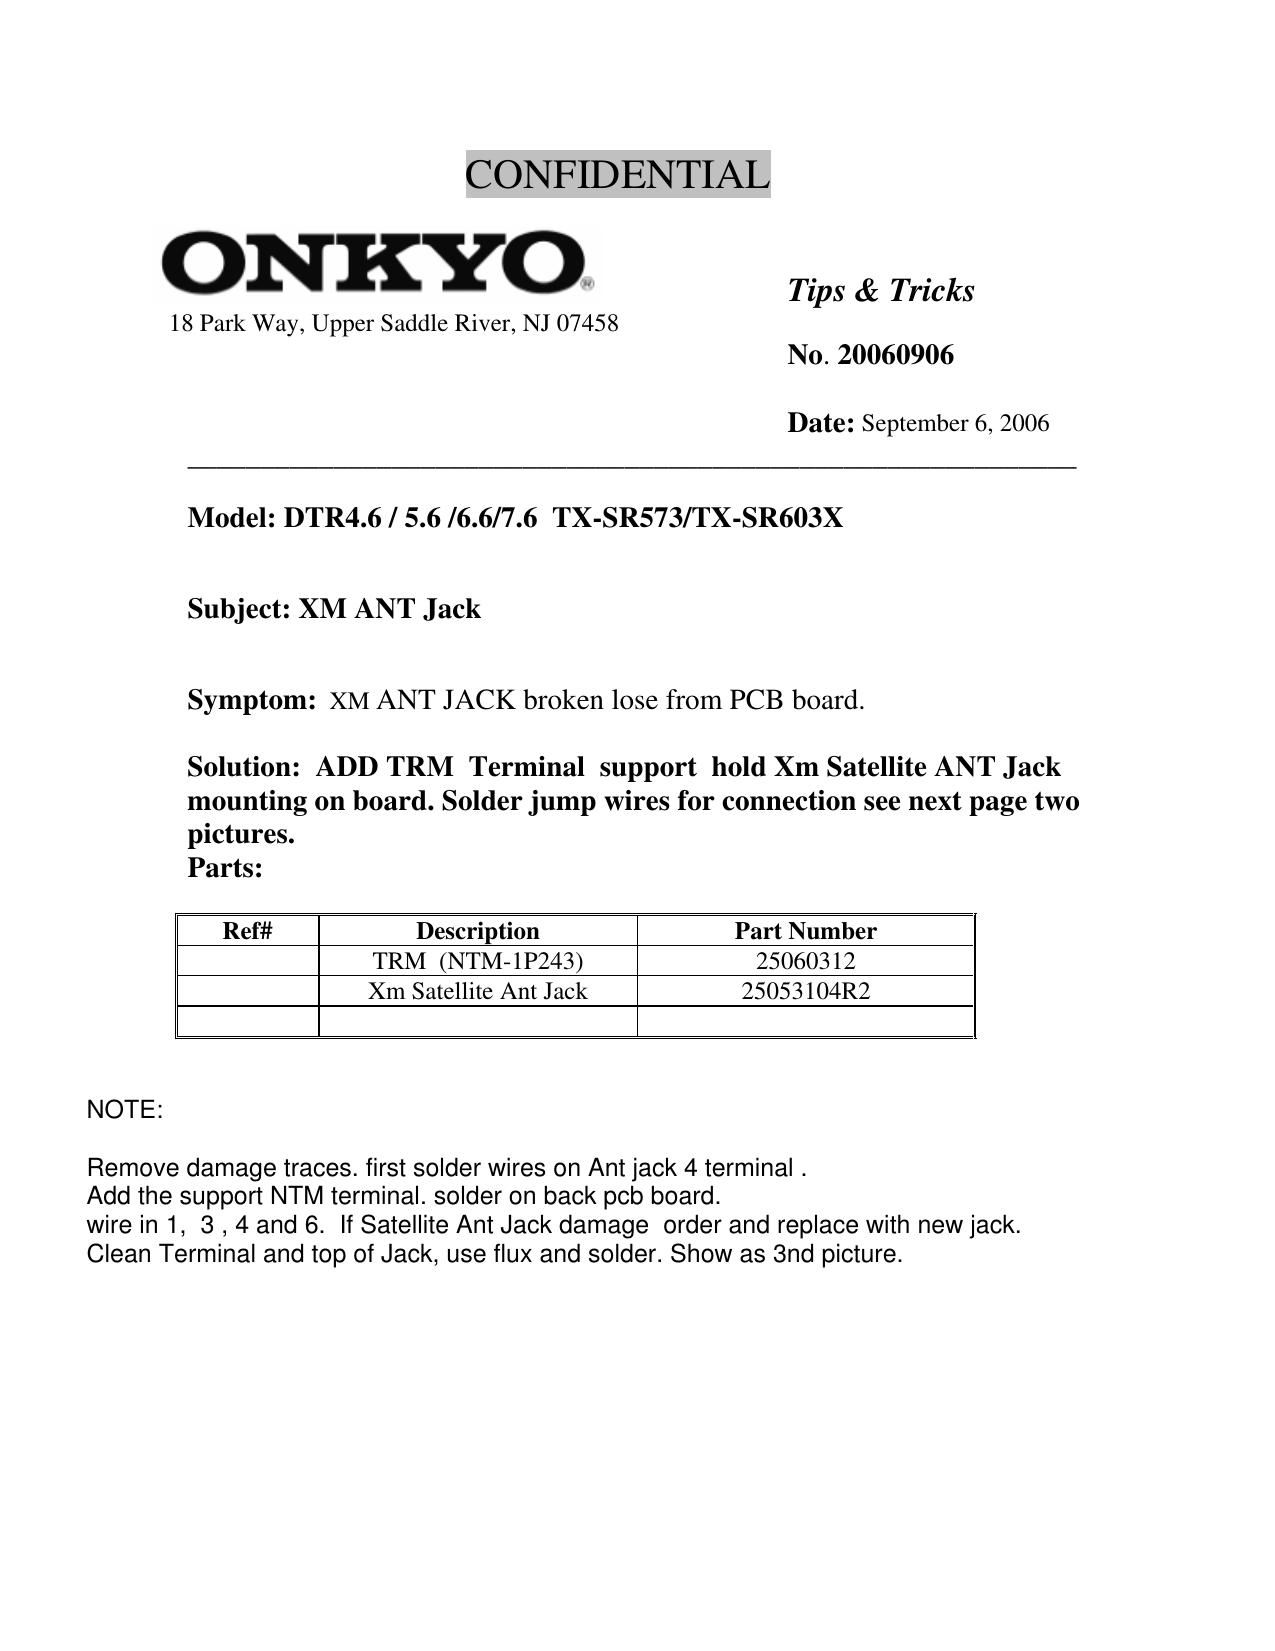 Onkyo DTR 4.6 Schematic